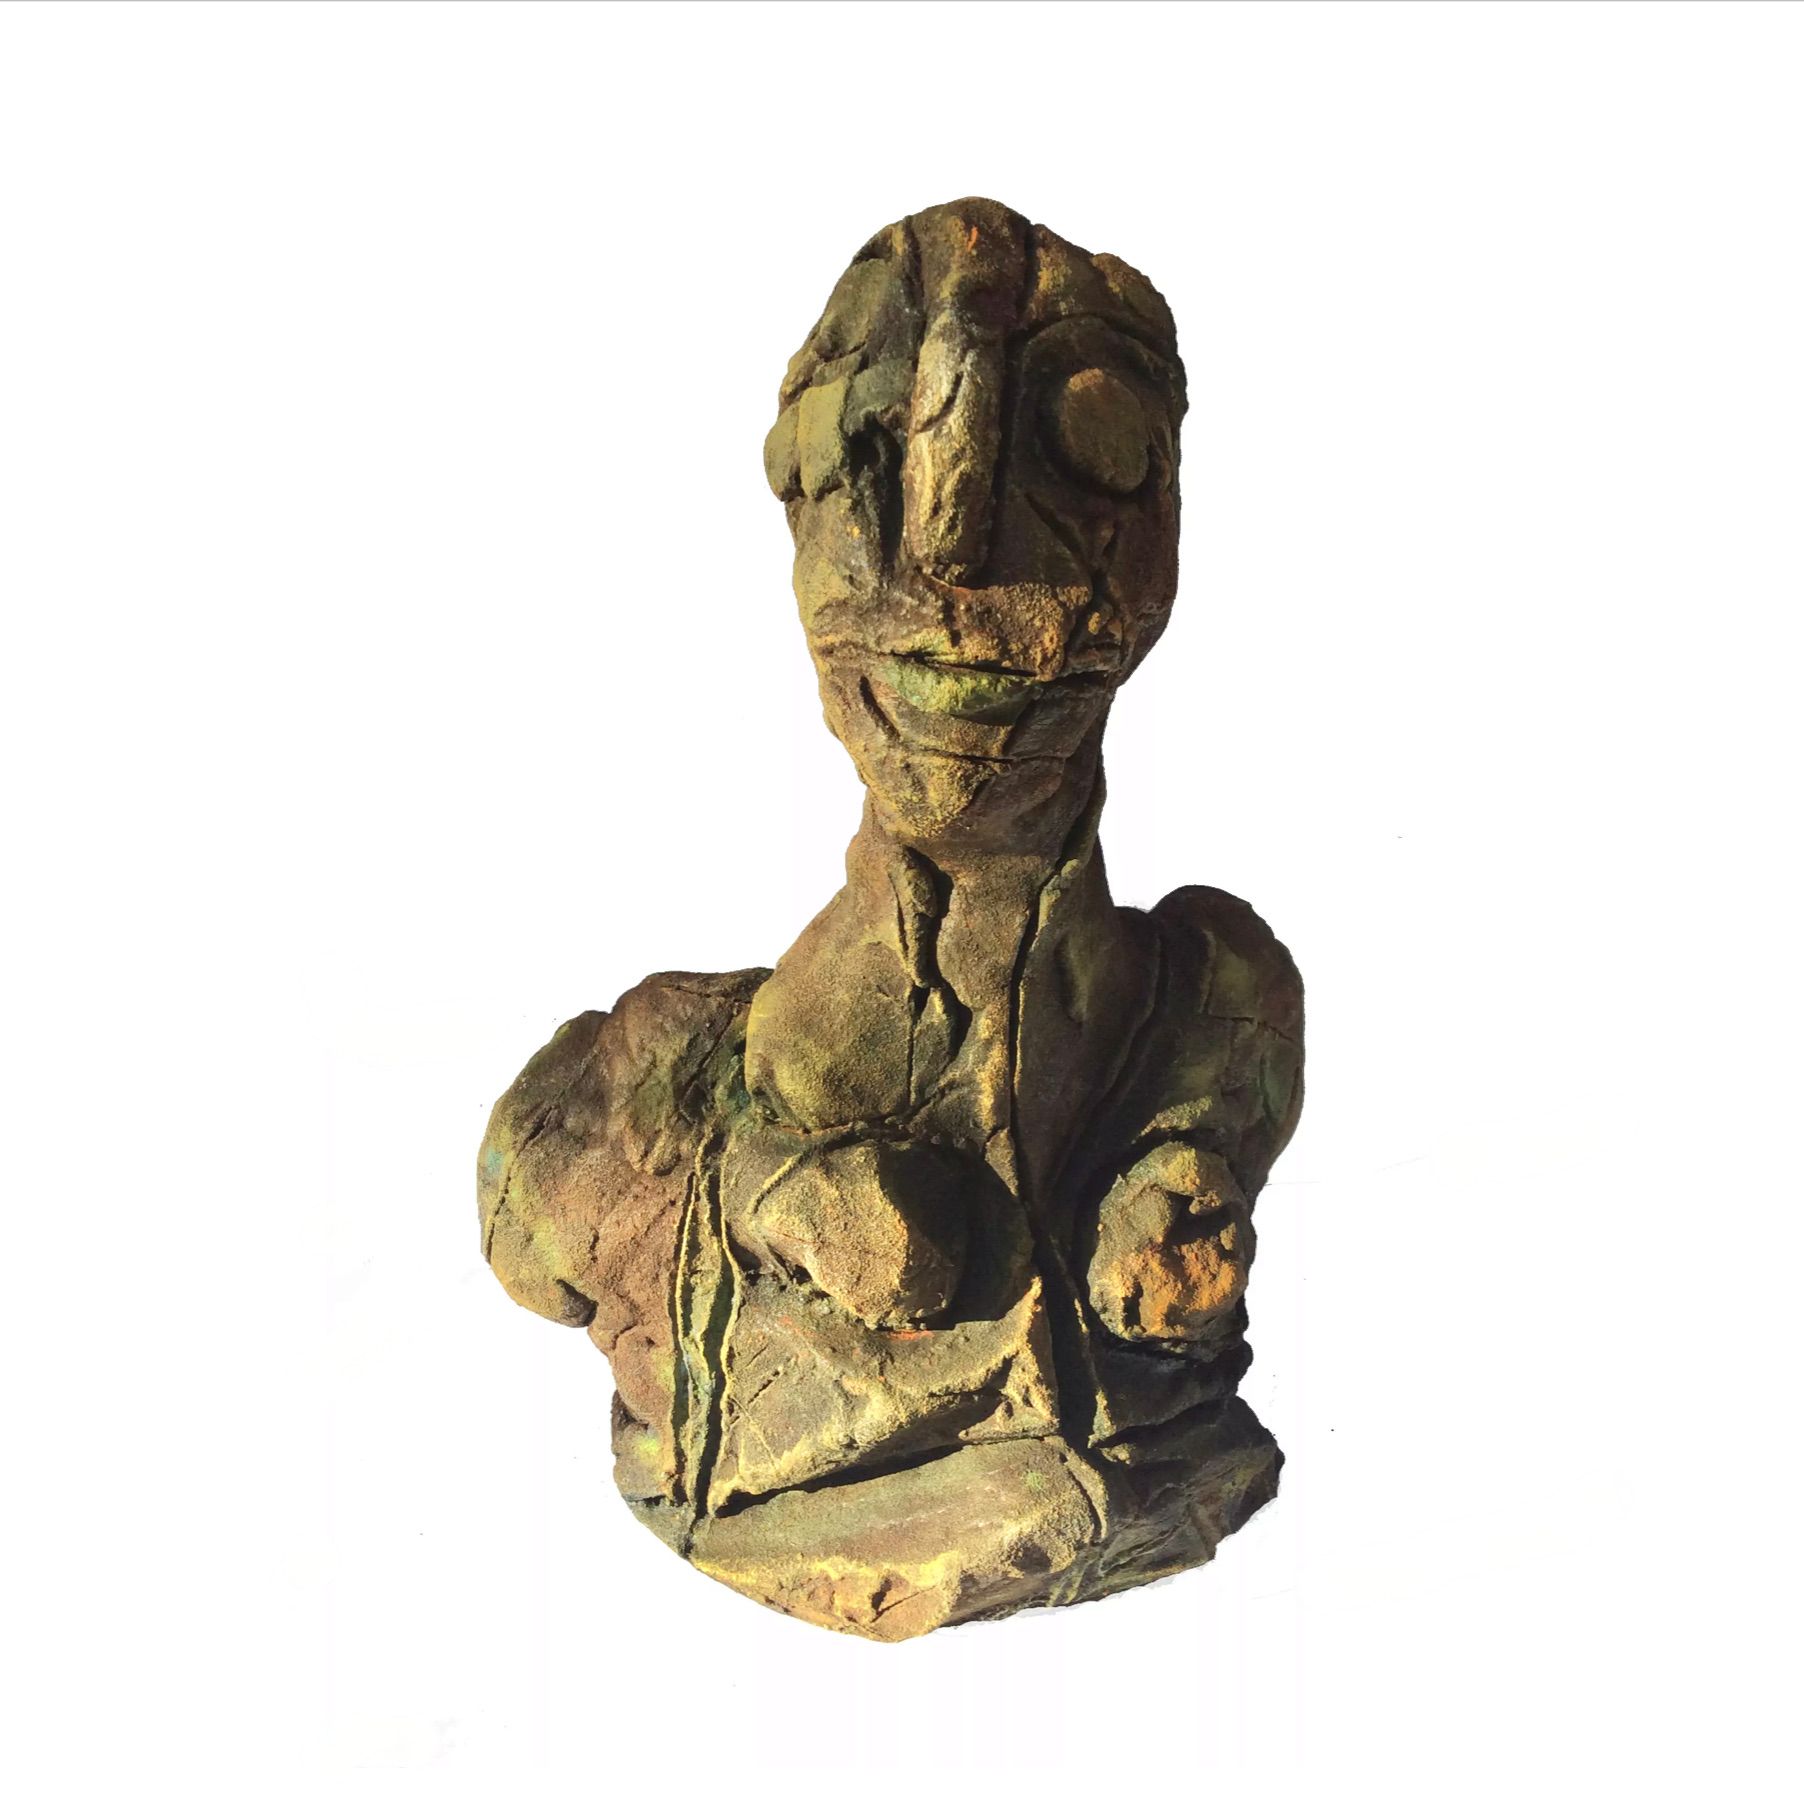 Le "petit buste" d'Ilona Schmidt montre une tête modelée en argile, modelée et cuite, masse de structure de rupture, patine